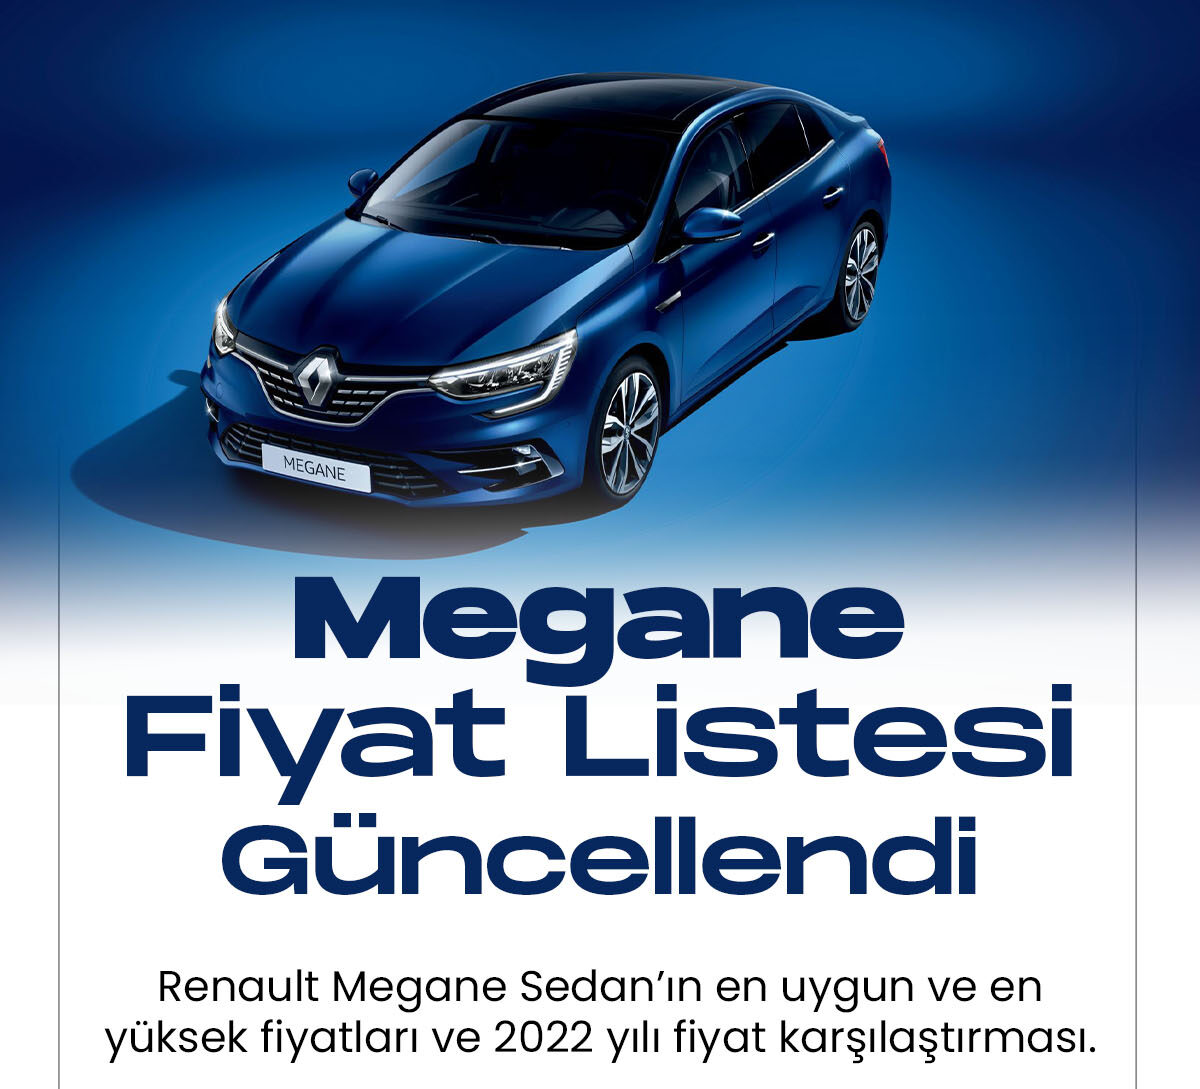 Renault Megane Ocak fiyat listesi yayımlandı. Türkiye'de en çok satılan araçlar arasında yer alan Renault Megane modelinin 2023 yılı fiyat listesi güncellendi.